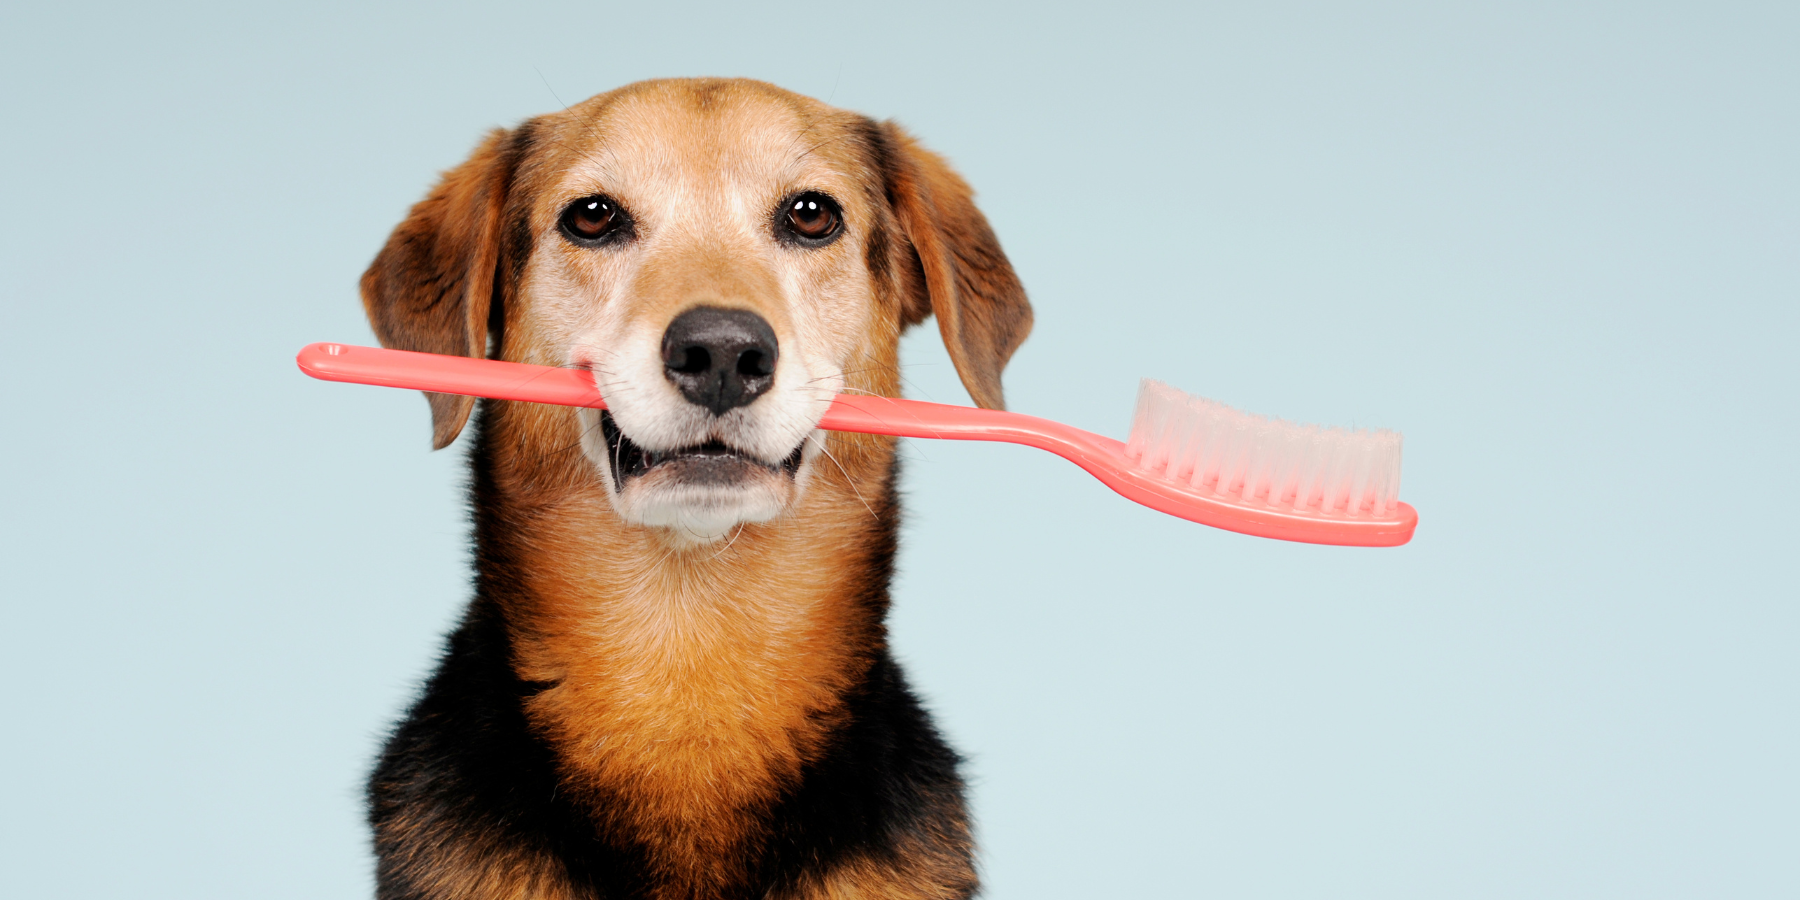 Muss ich die Zähne meines Hundes putzen?